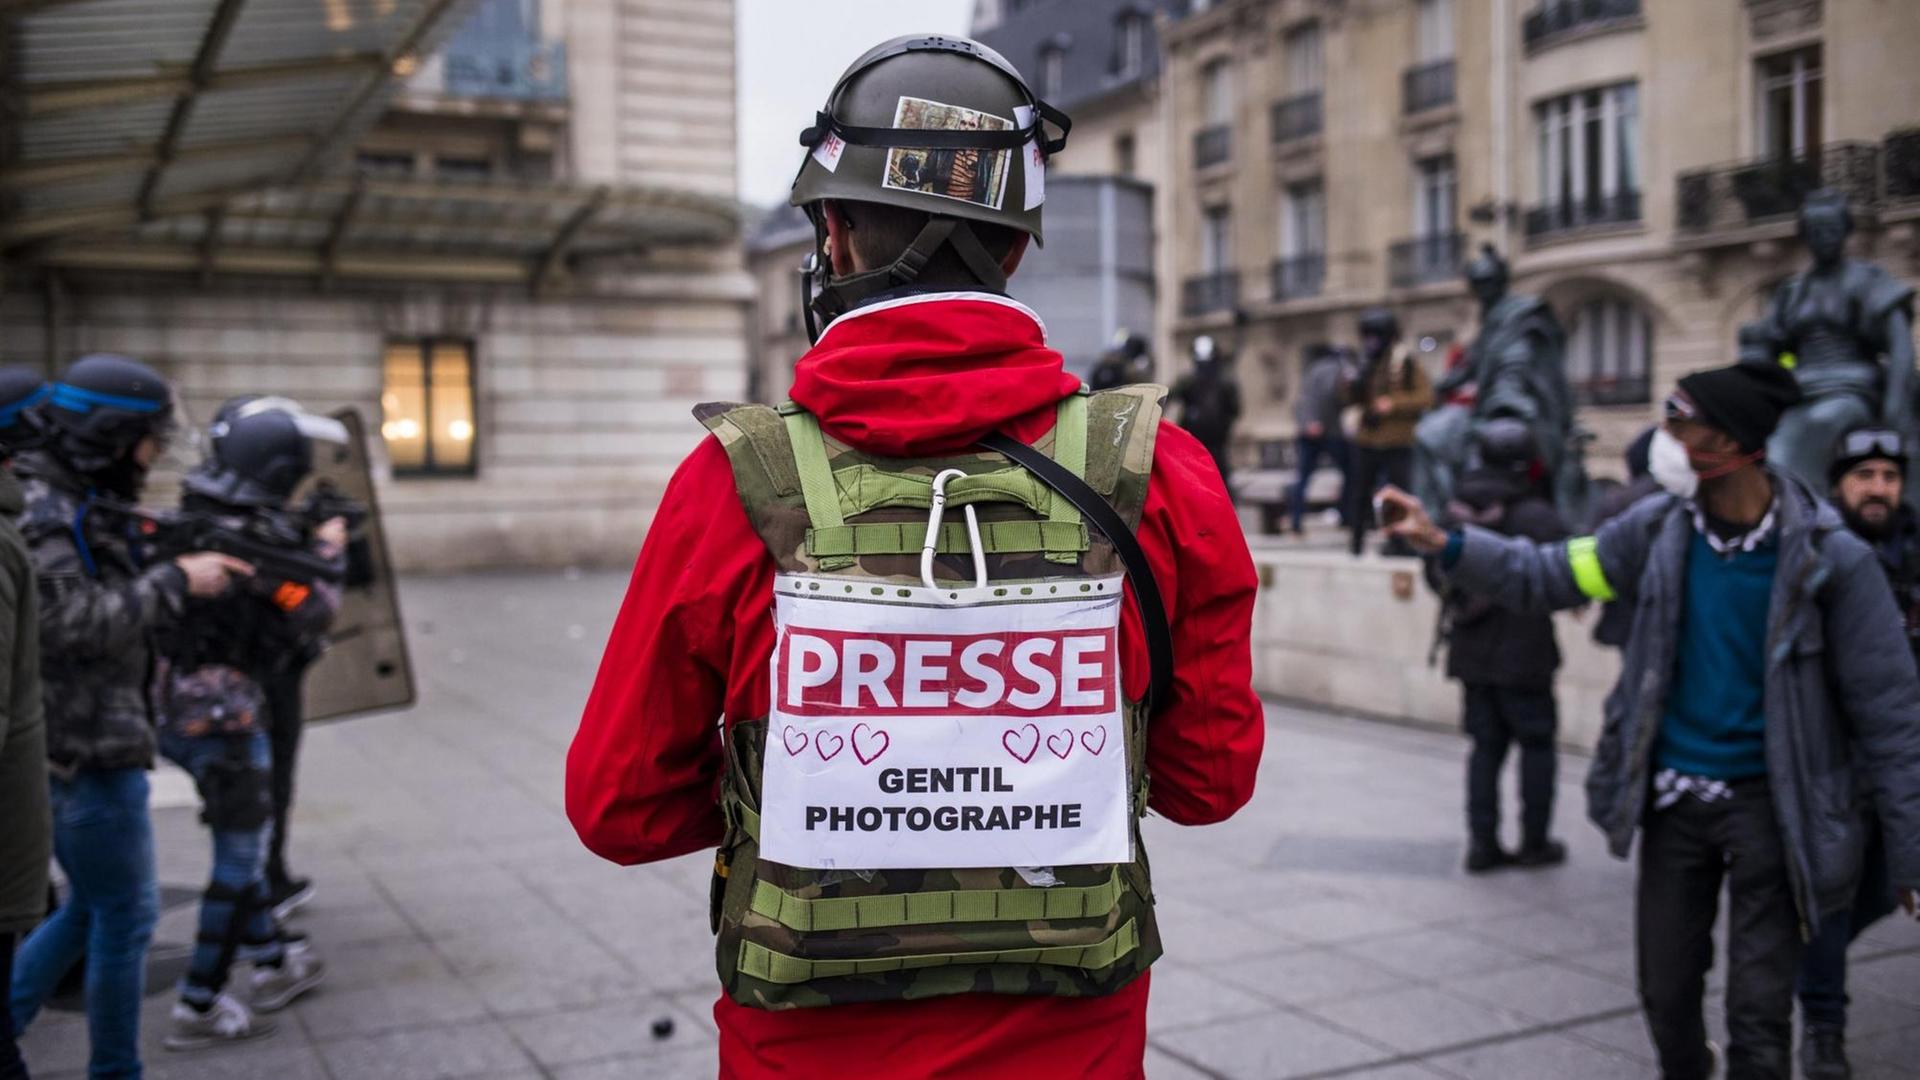 Ein Journalist in Paris trägt bei den Gelbwesten-Protesten ein Schild mit der Nachricht "Presse - freundlicher Fotograf" auf dem Rücken.